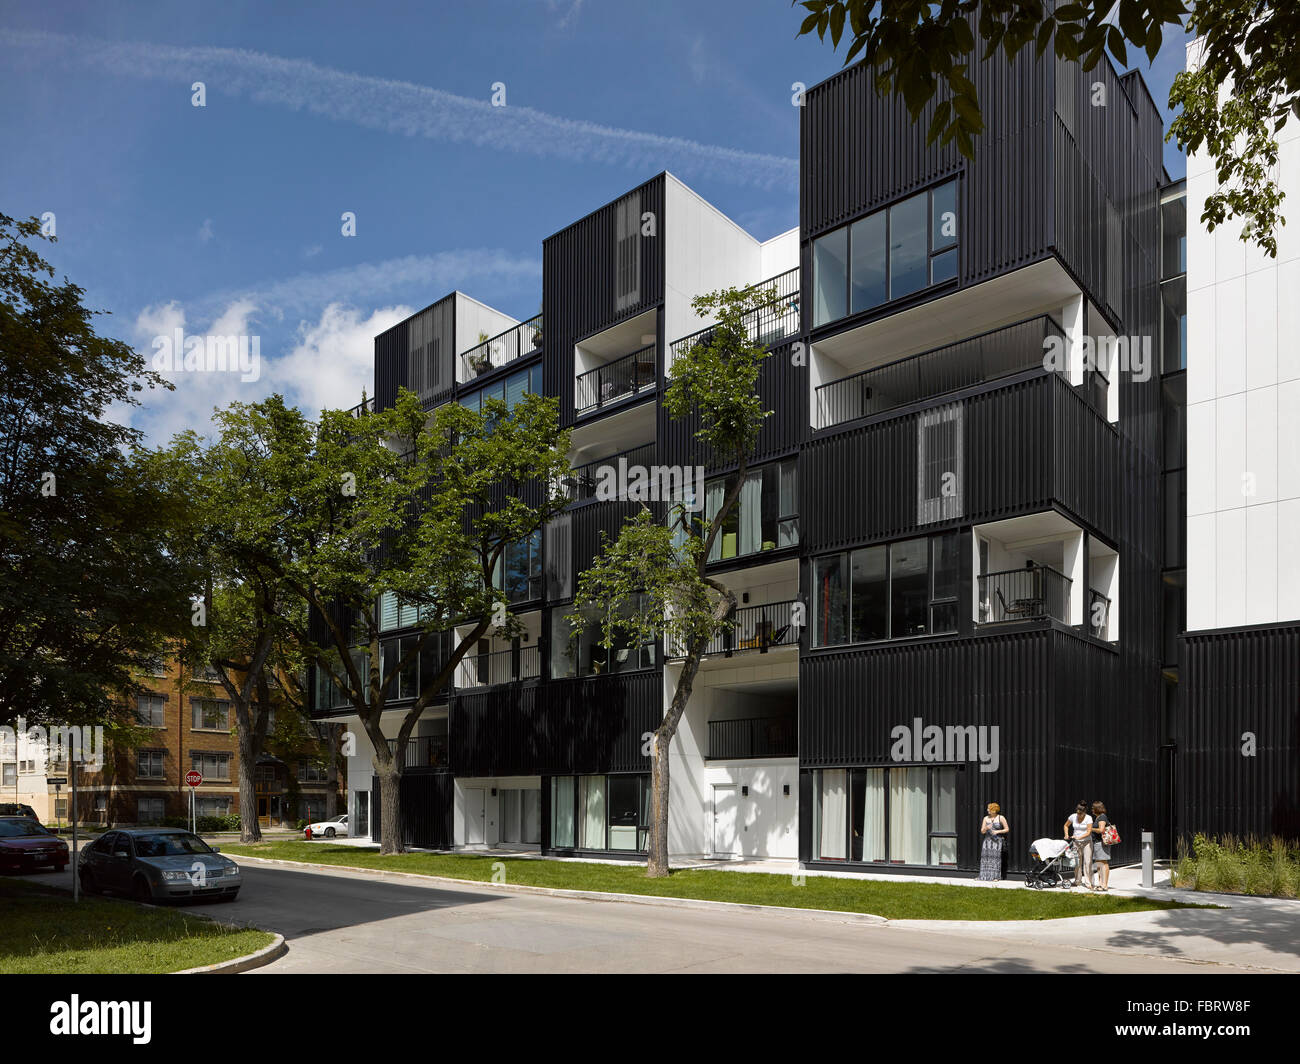 L'altitude du sud. Oz Condominiums, Winnipeg, Canada. Architecte : 5468796 L'Architecture, 2015. Banque D'Images